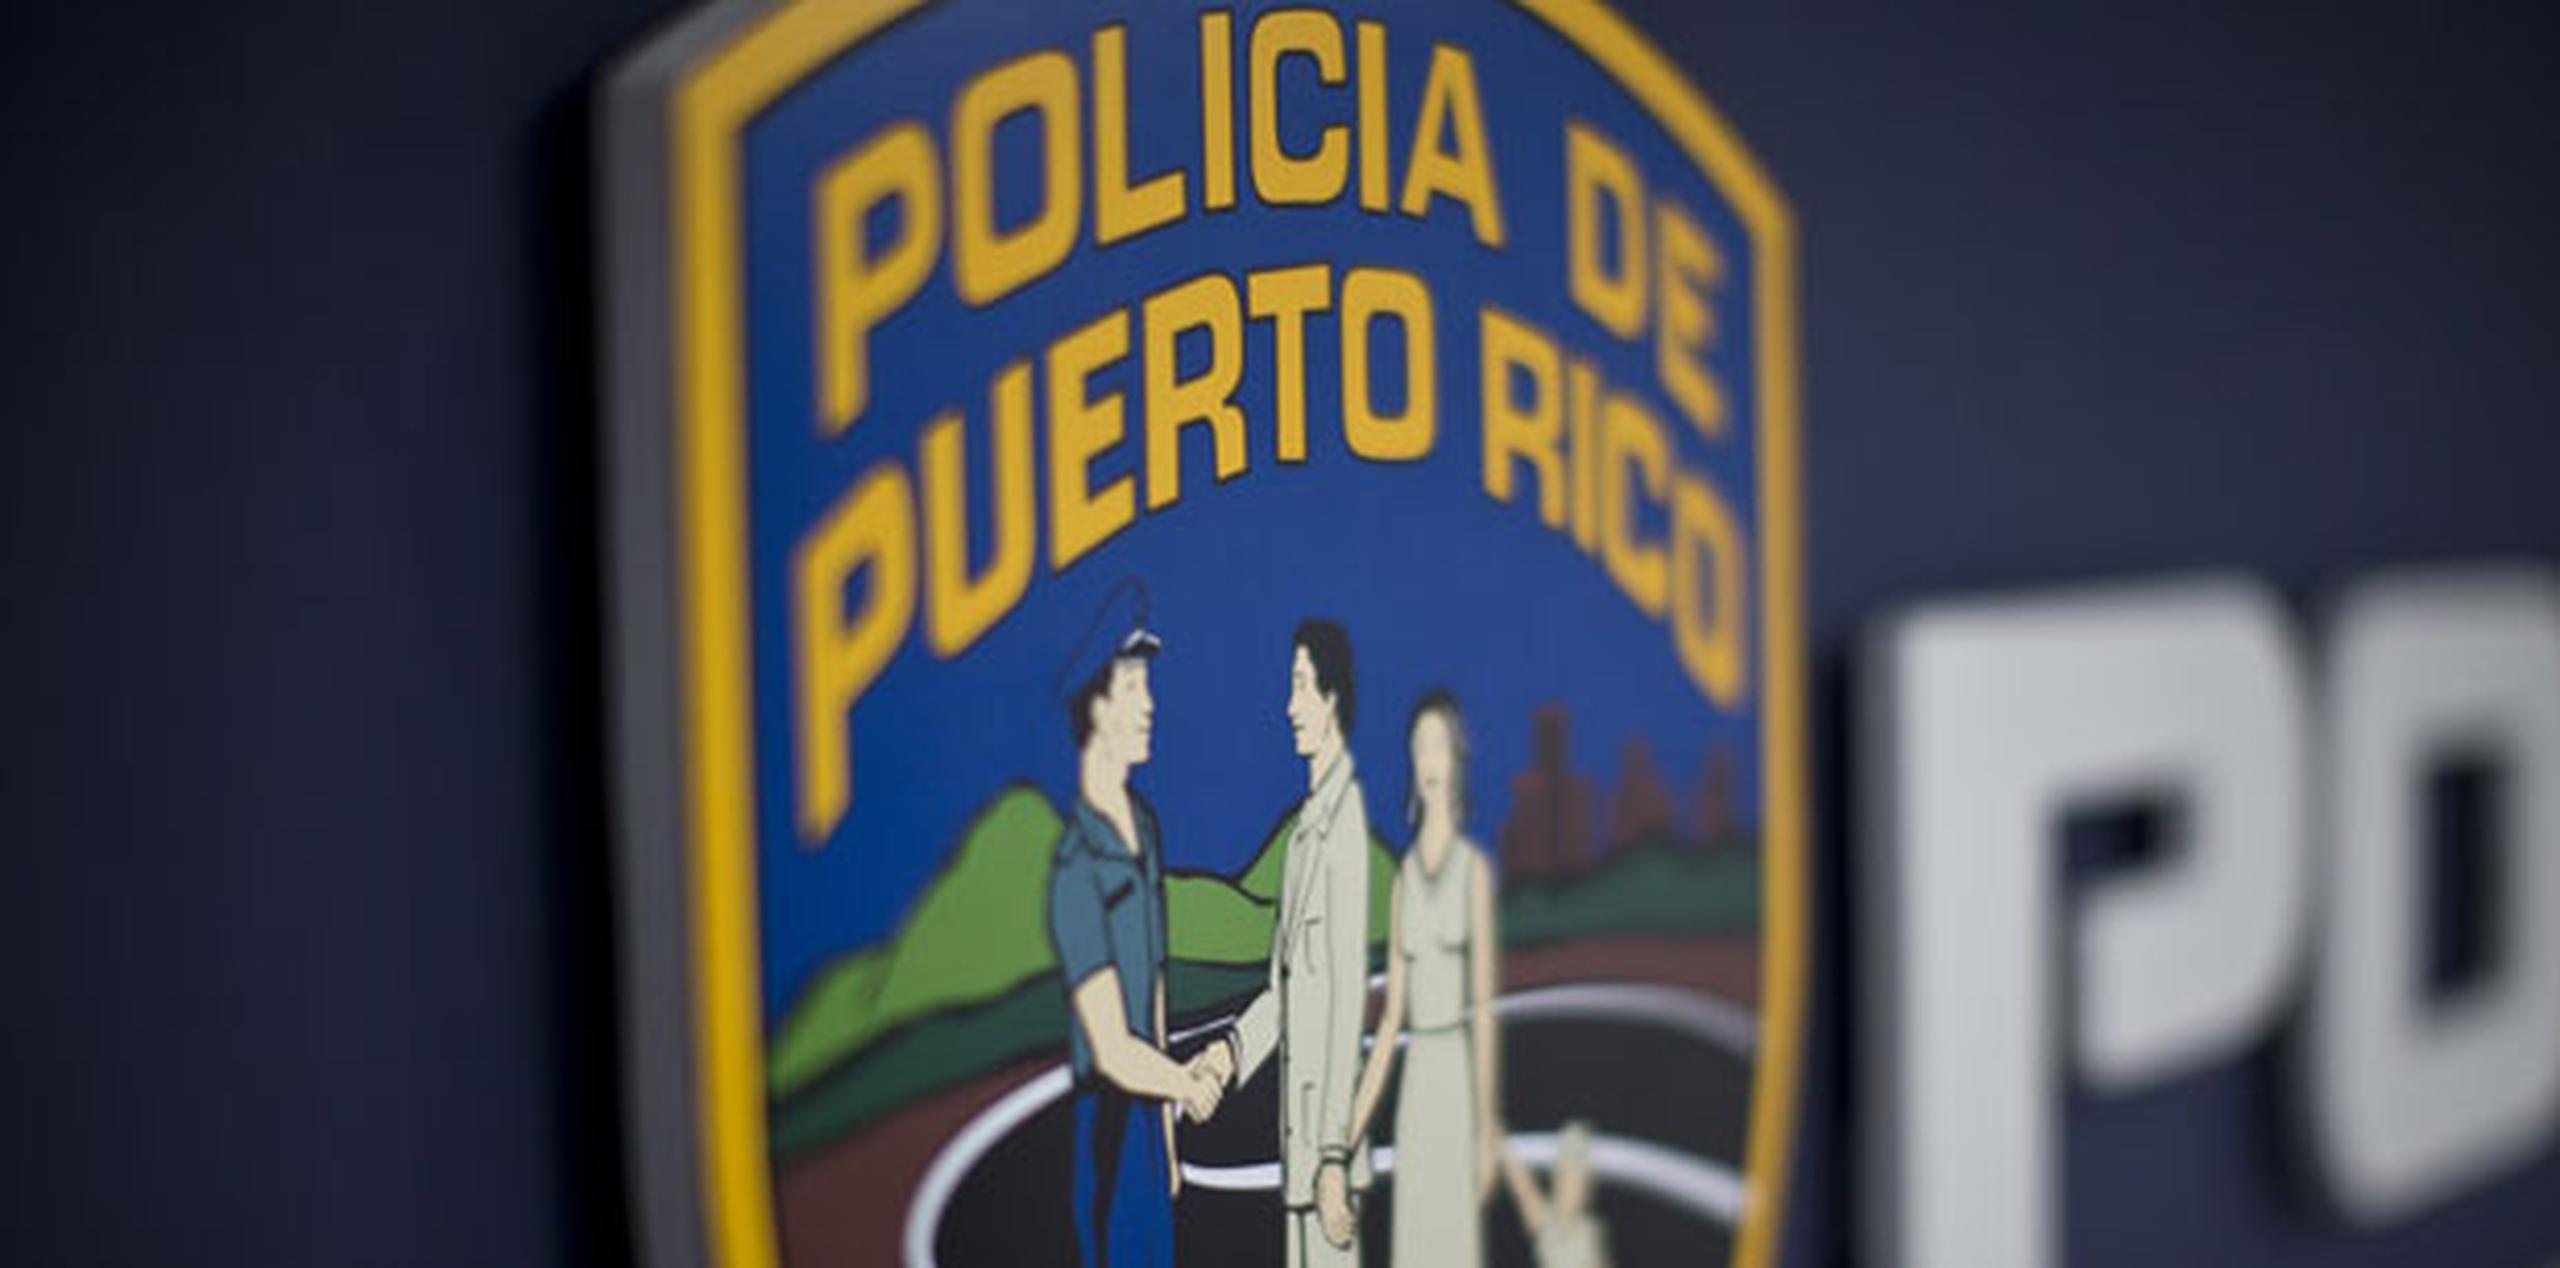 La investigación preliminar fue referida al Distrito de Coamo, pero se notificó a la División de Propiedad de la Policía en Aibonito. (Archivo)